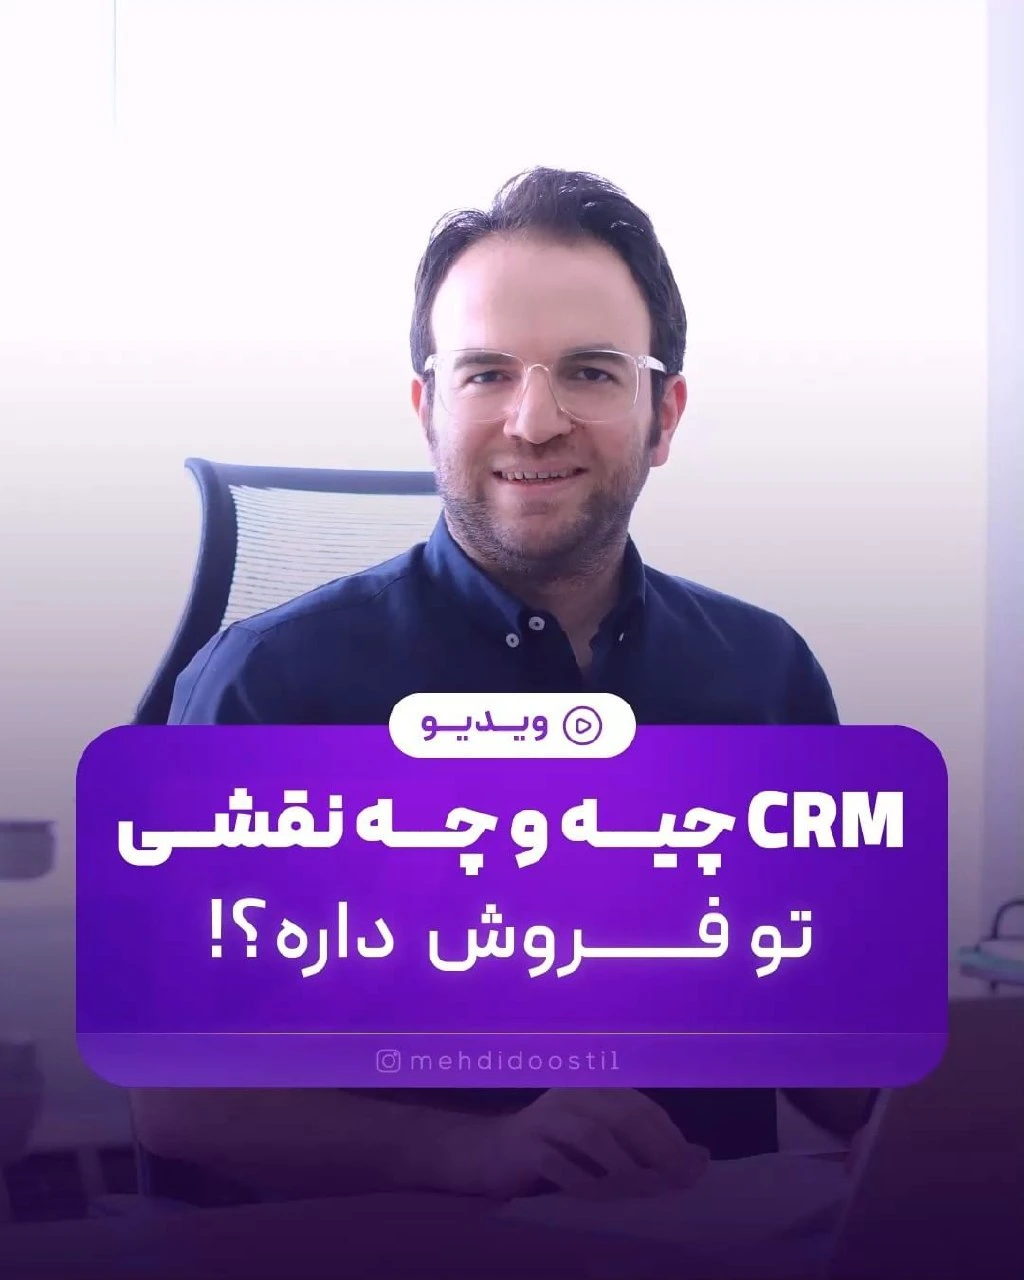 مدیریت ارتباط با مشتری (CRM) چیست و چه کاربردی دارد؟